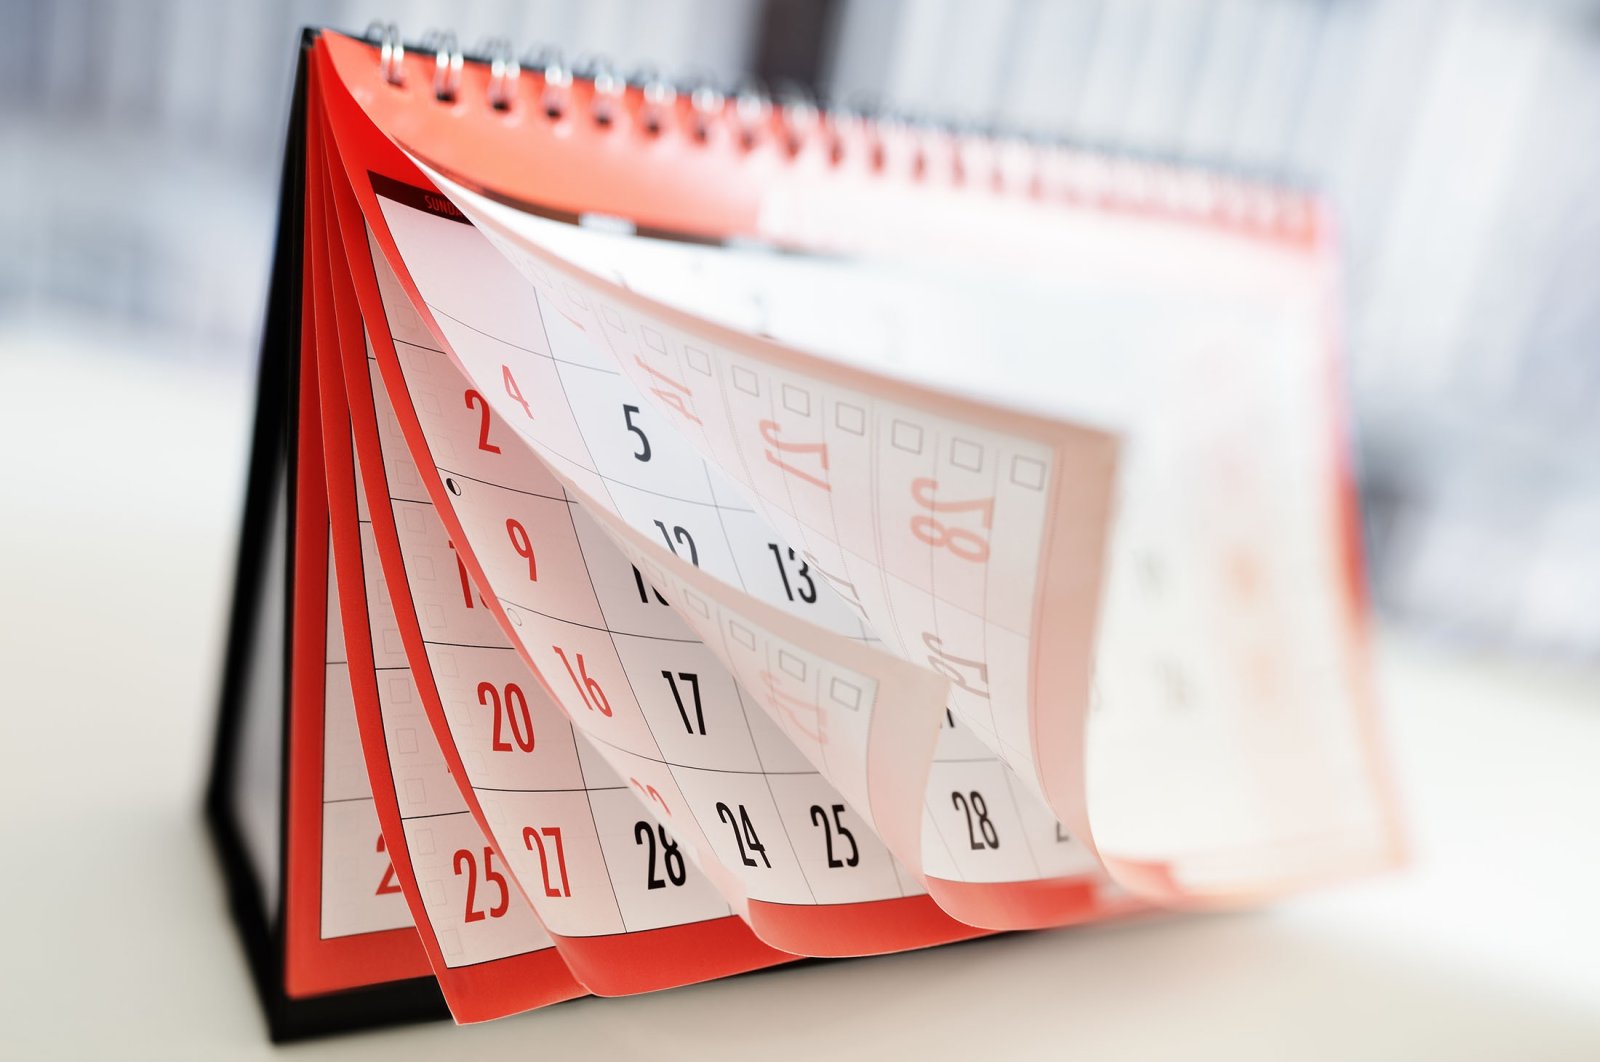 Tandai kalender Anda: Panduan liburan ekspatriat untuk tahun 2022 di Turki